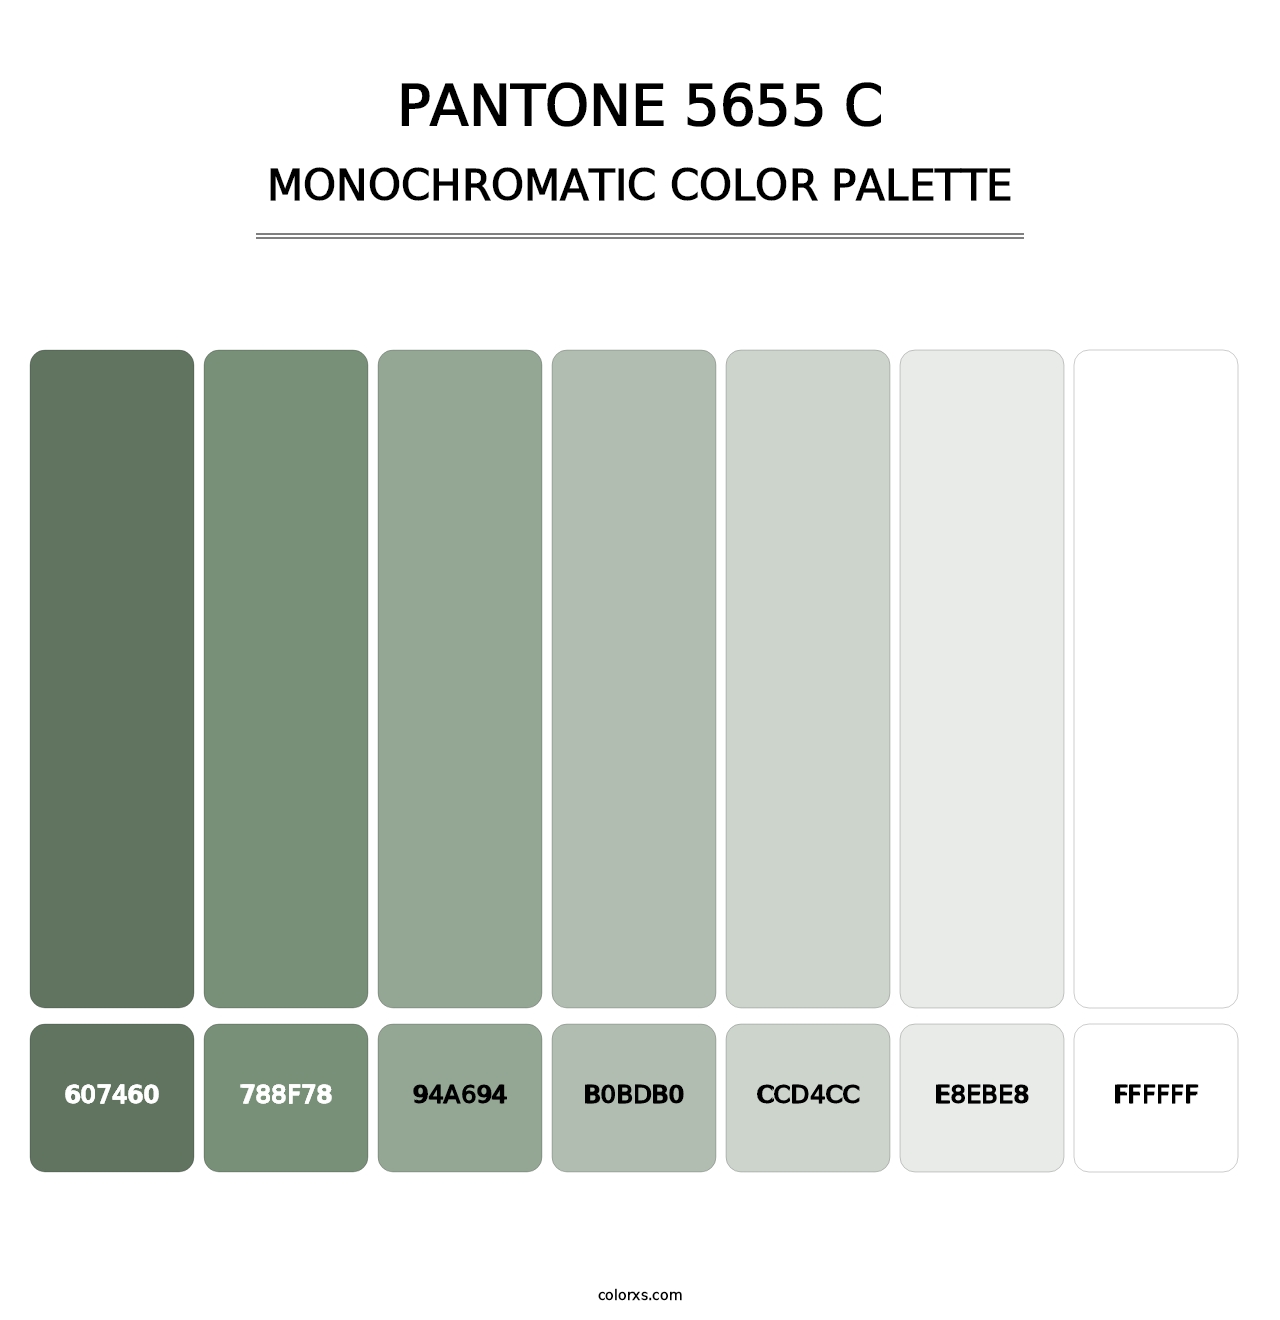 PANTONE 5655 C - Monochromatic Color Palette